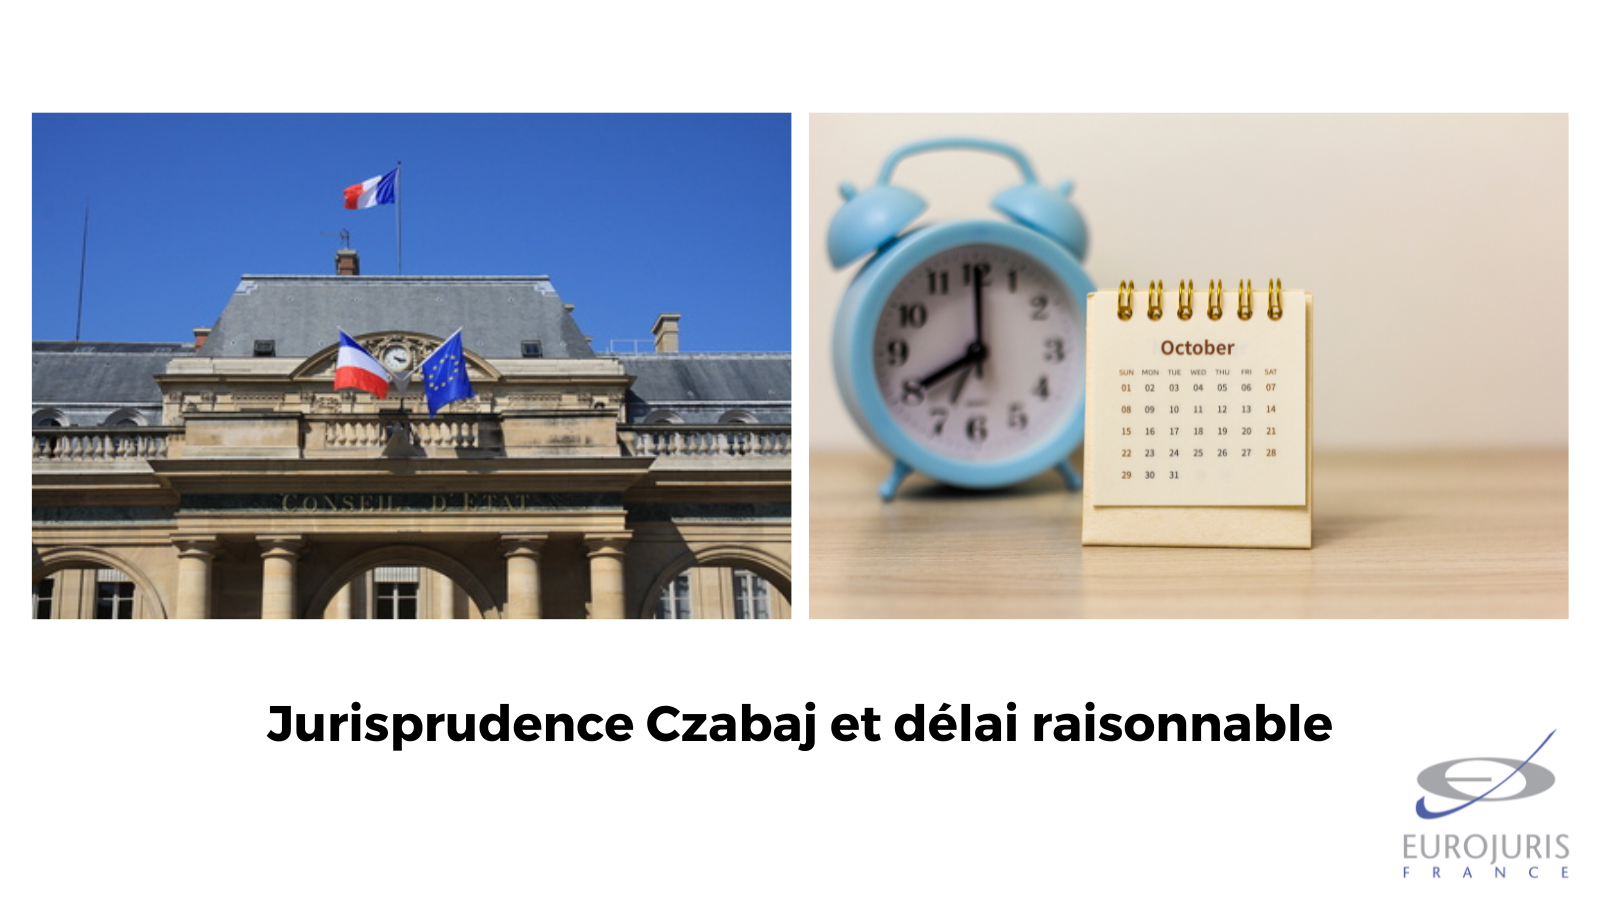 Jurisprudence Czabaj : exemple de circonstances particulières justifiant un recours 40 ans plus tard…